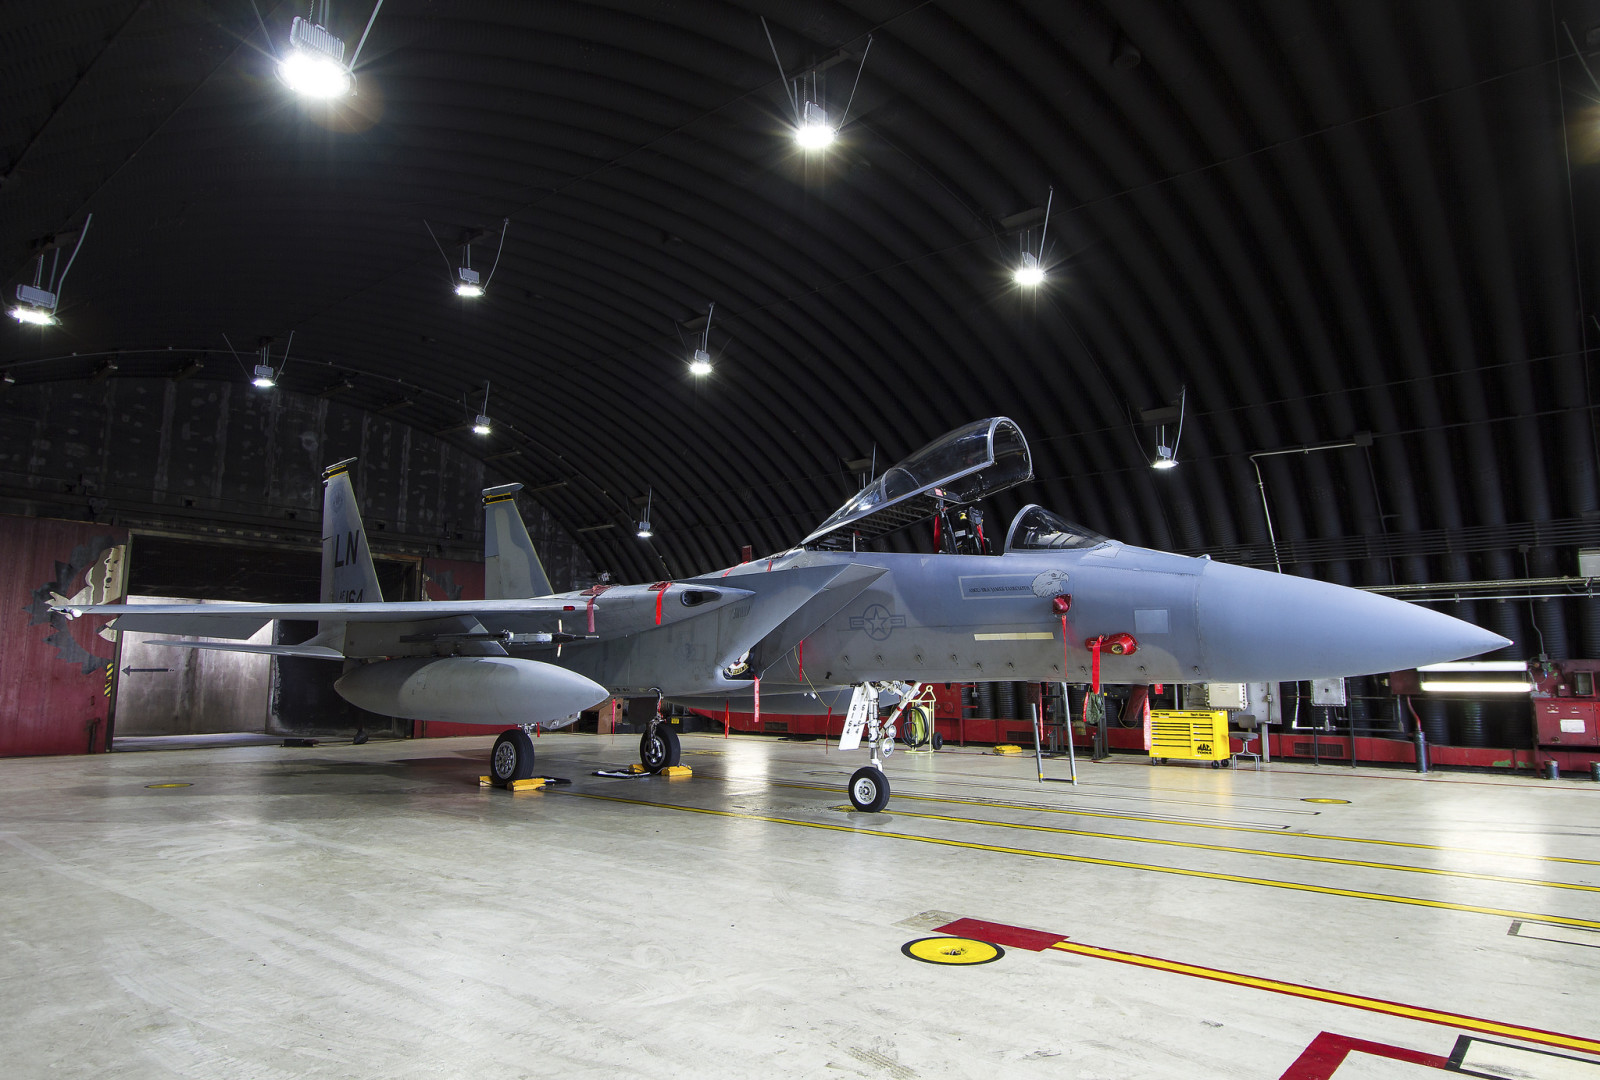 โรงเก็บเครื่องบิน, นักมวย, นกอินทรีย์, "อินทรี", F-15D